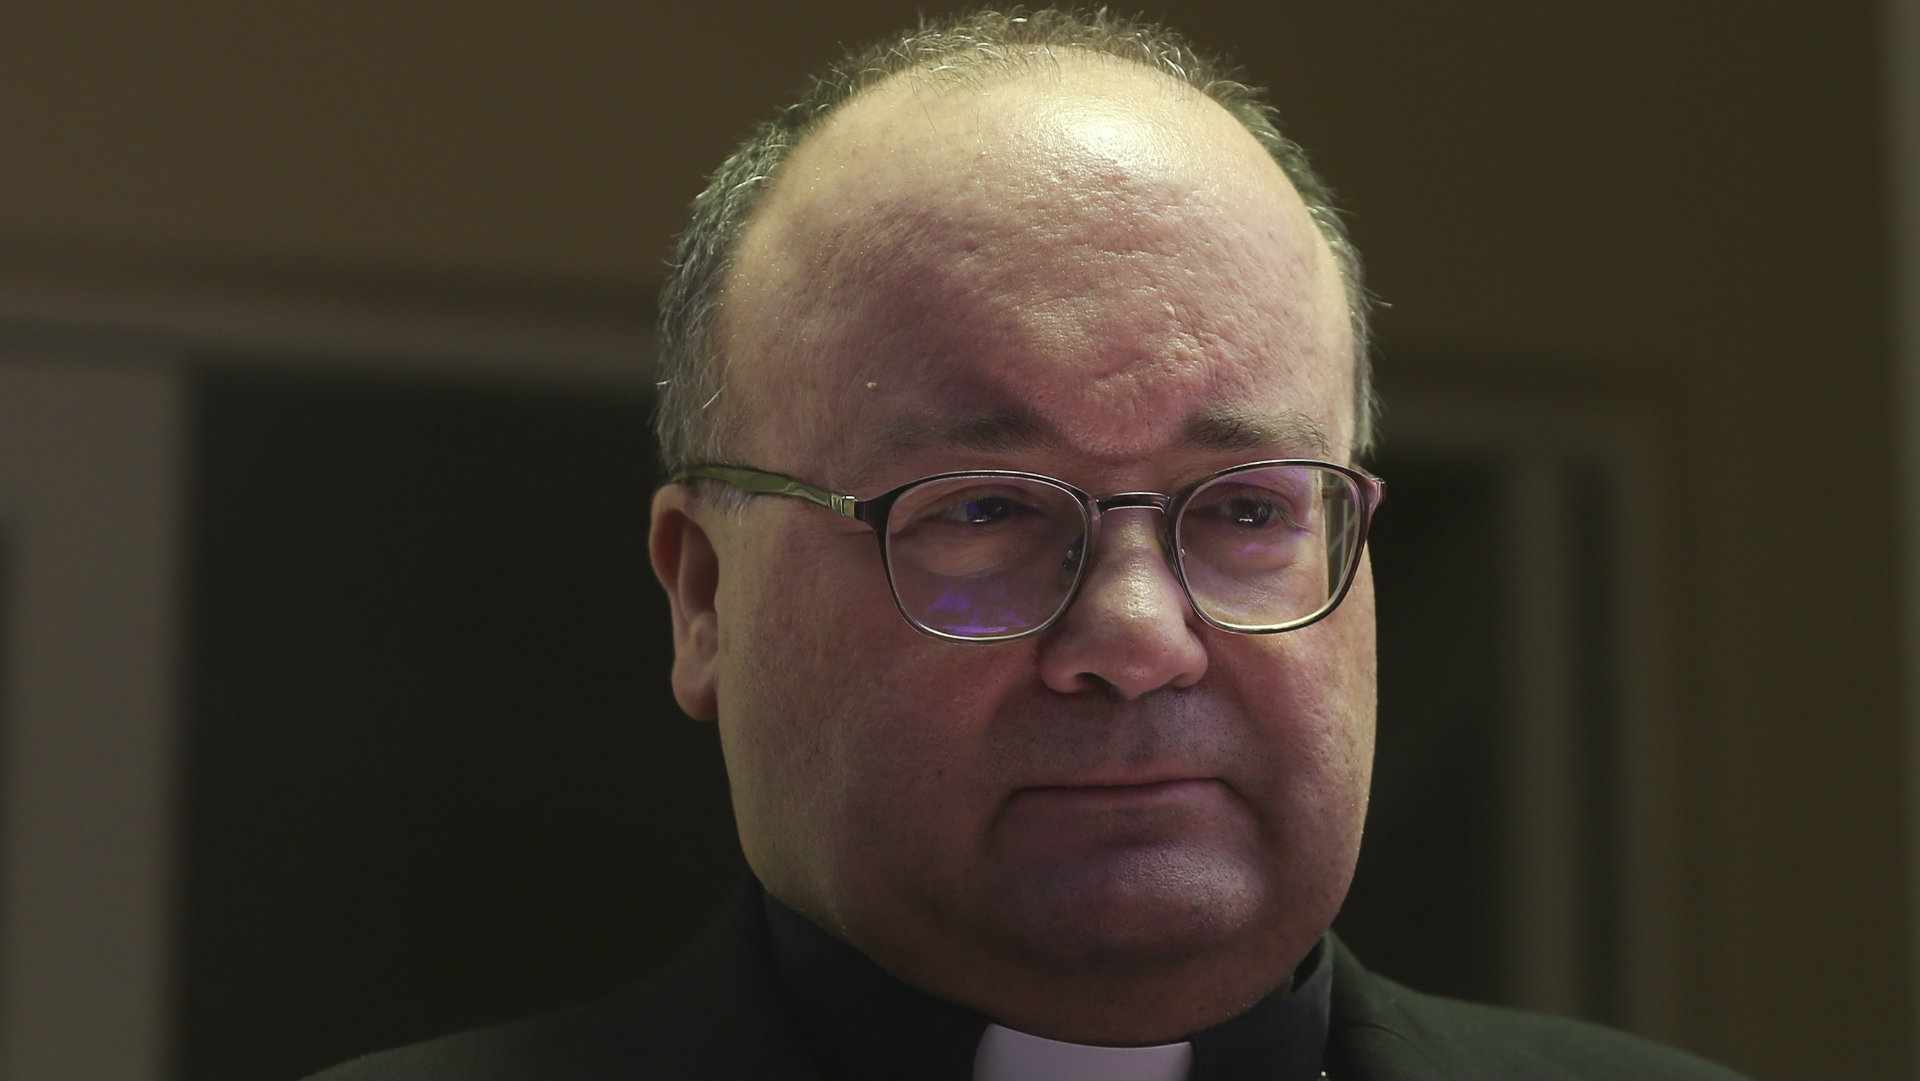 El enviado del Vaticano escucha testimonios sobre abusos sexuales en Chile